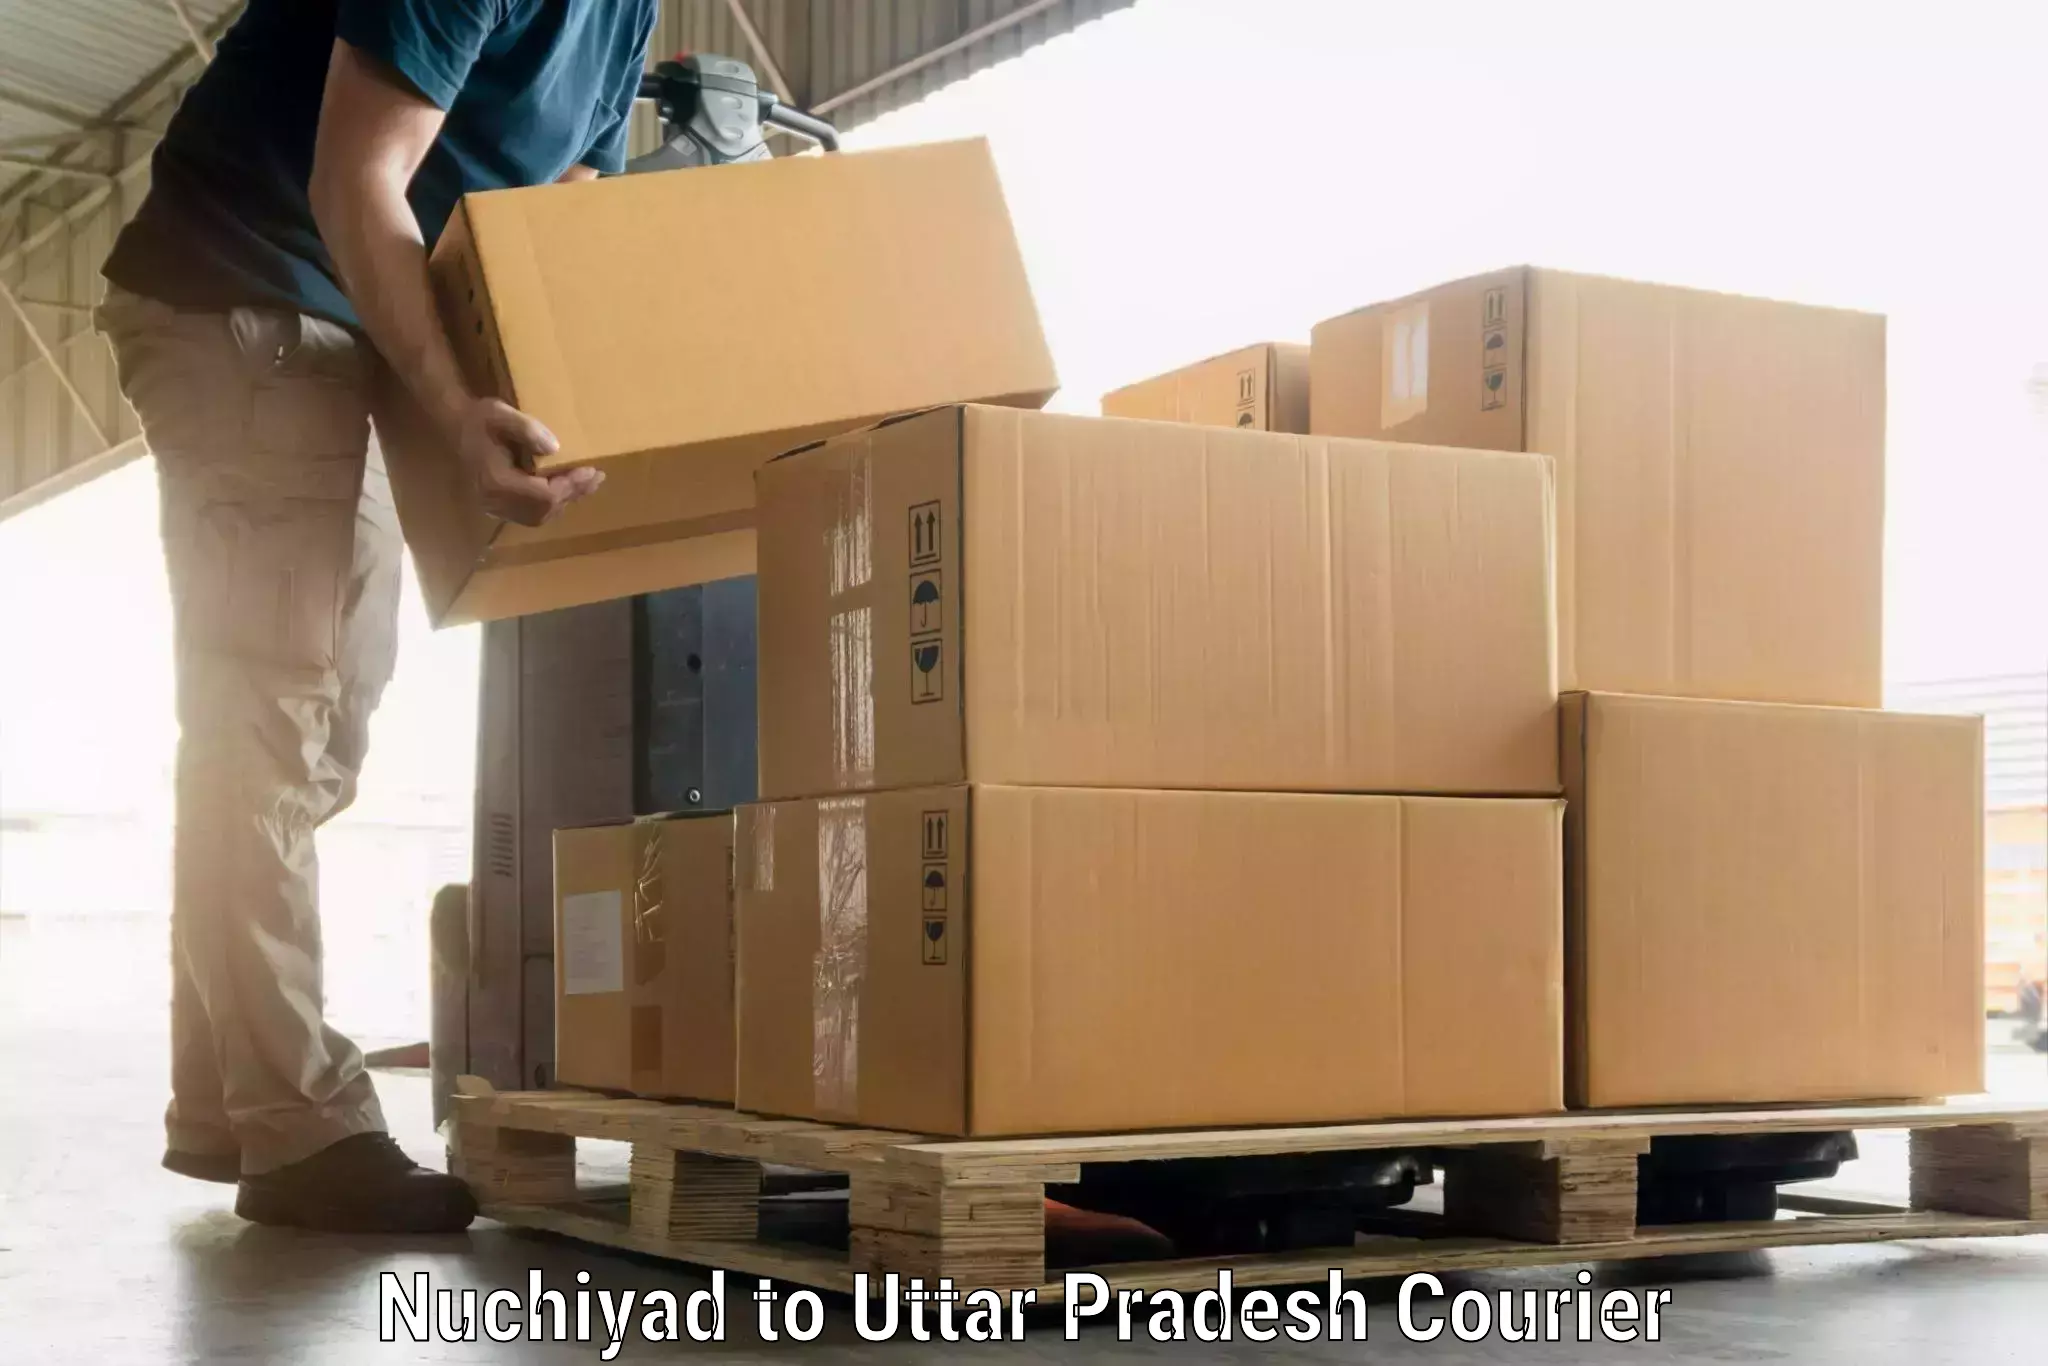 Luggage delivery app Nuchiyad to Uttar Pradesh